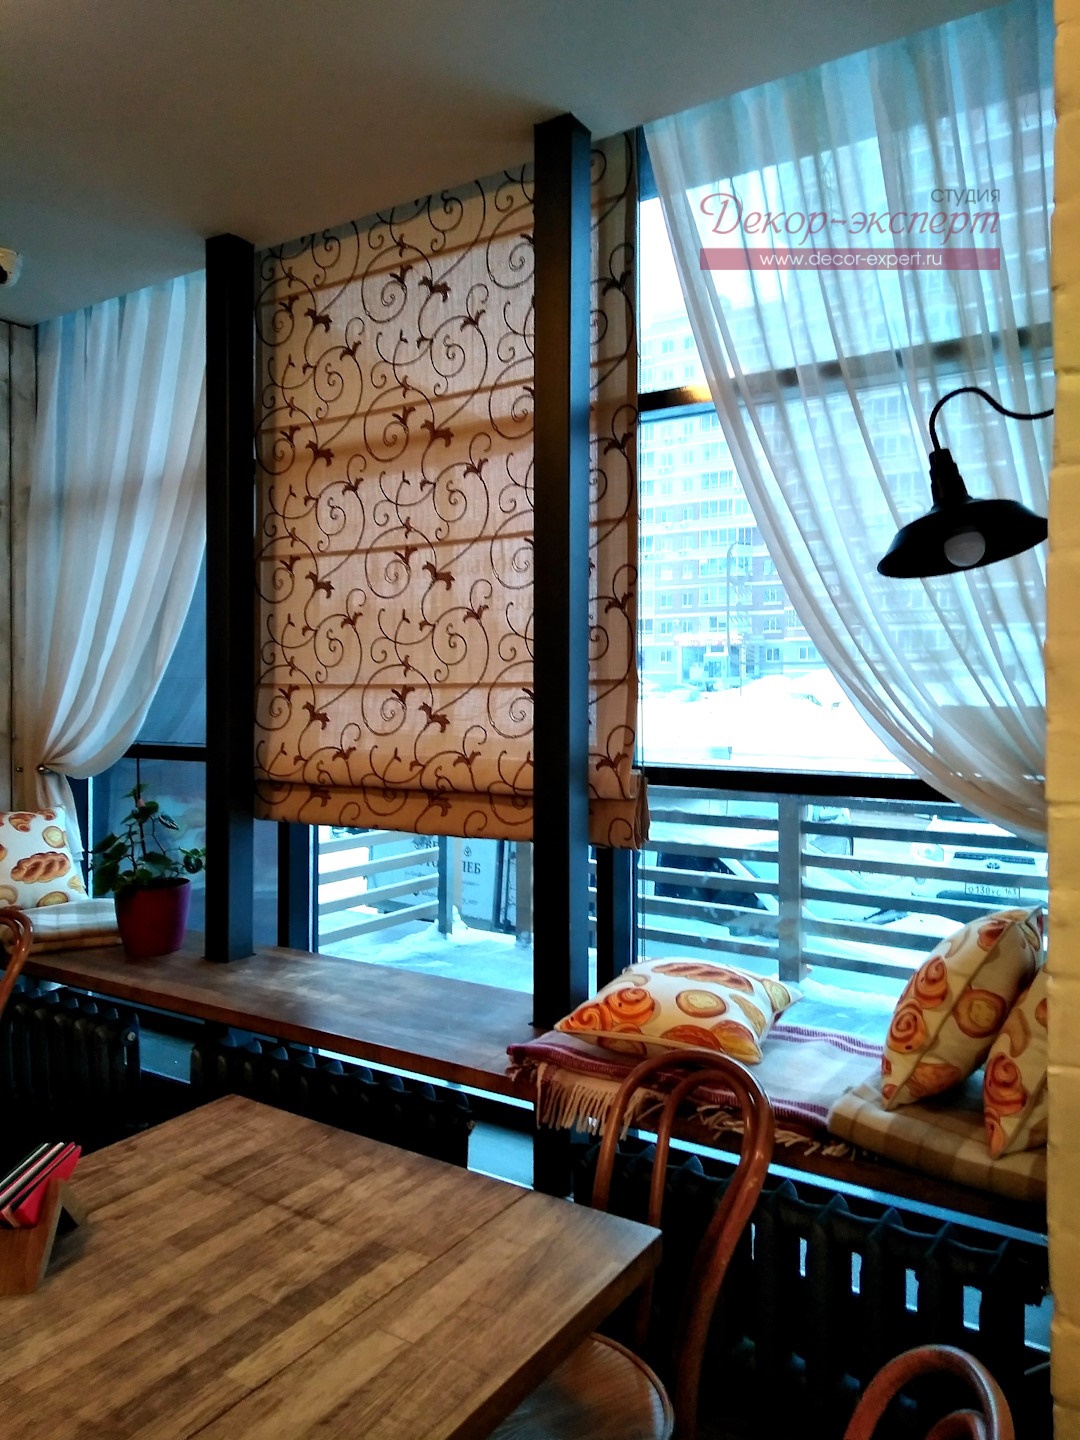 Вид слева на весь реализованный проект текстильного декора для окна в пекарне.